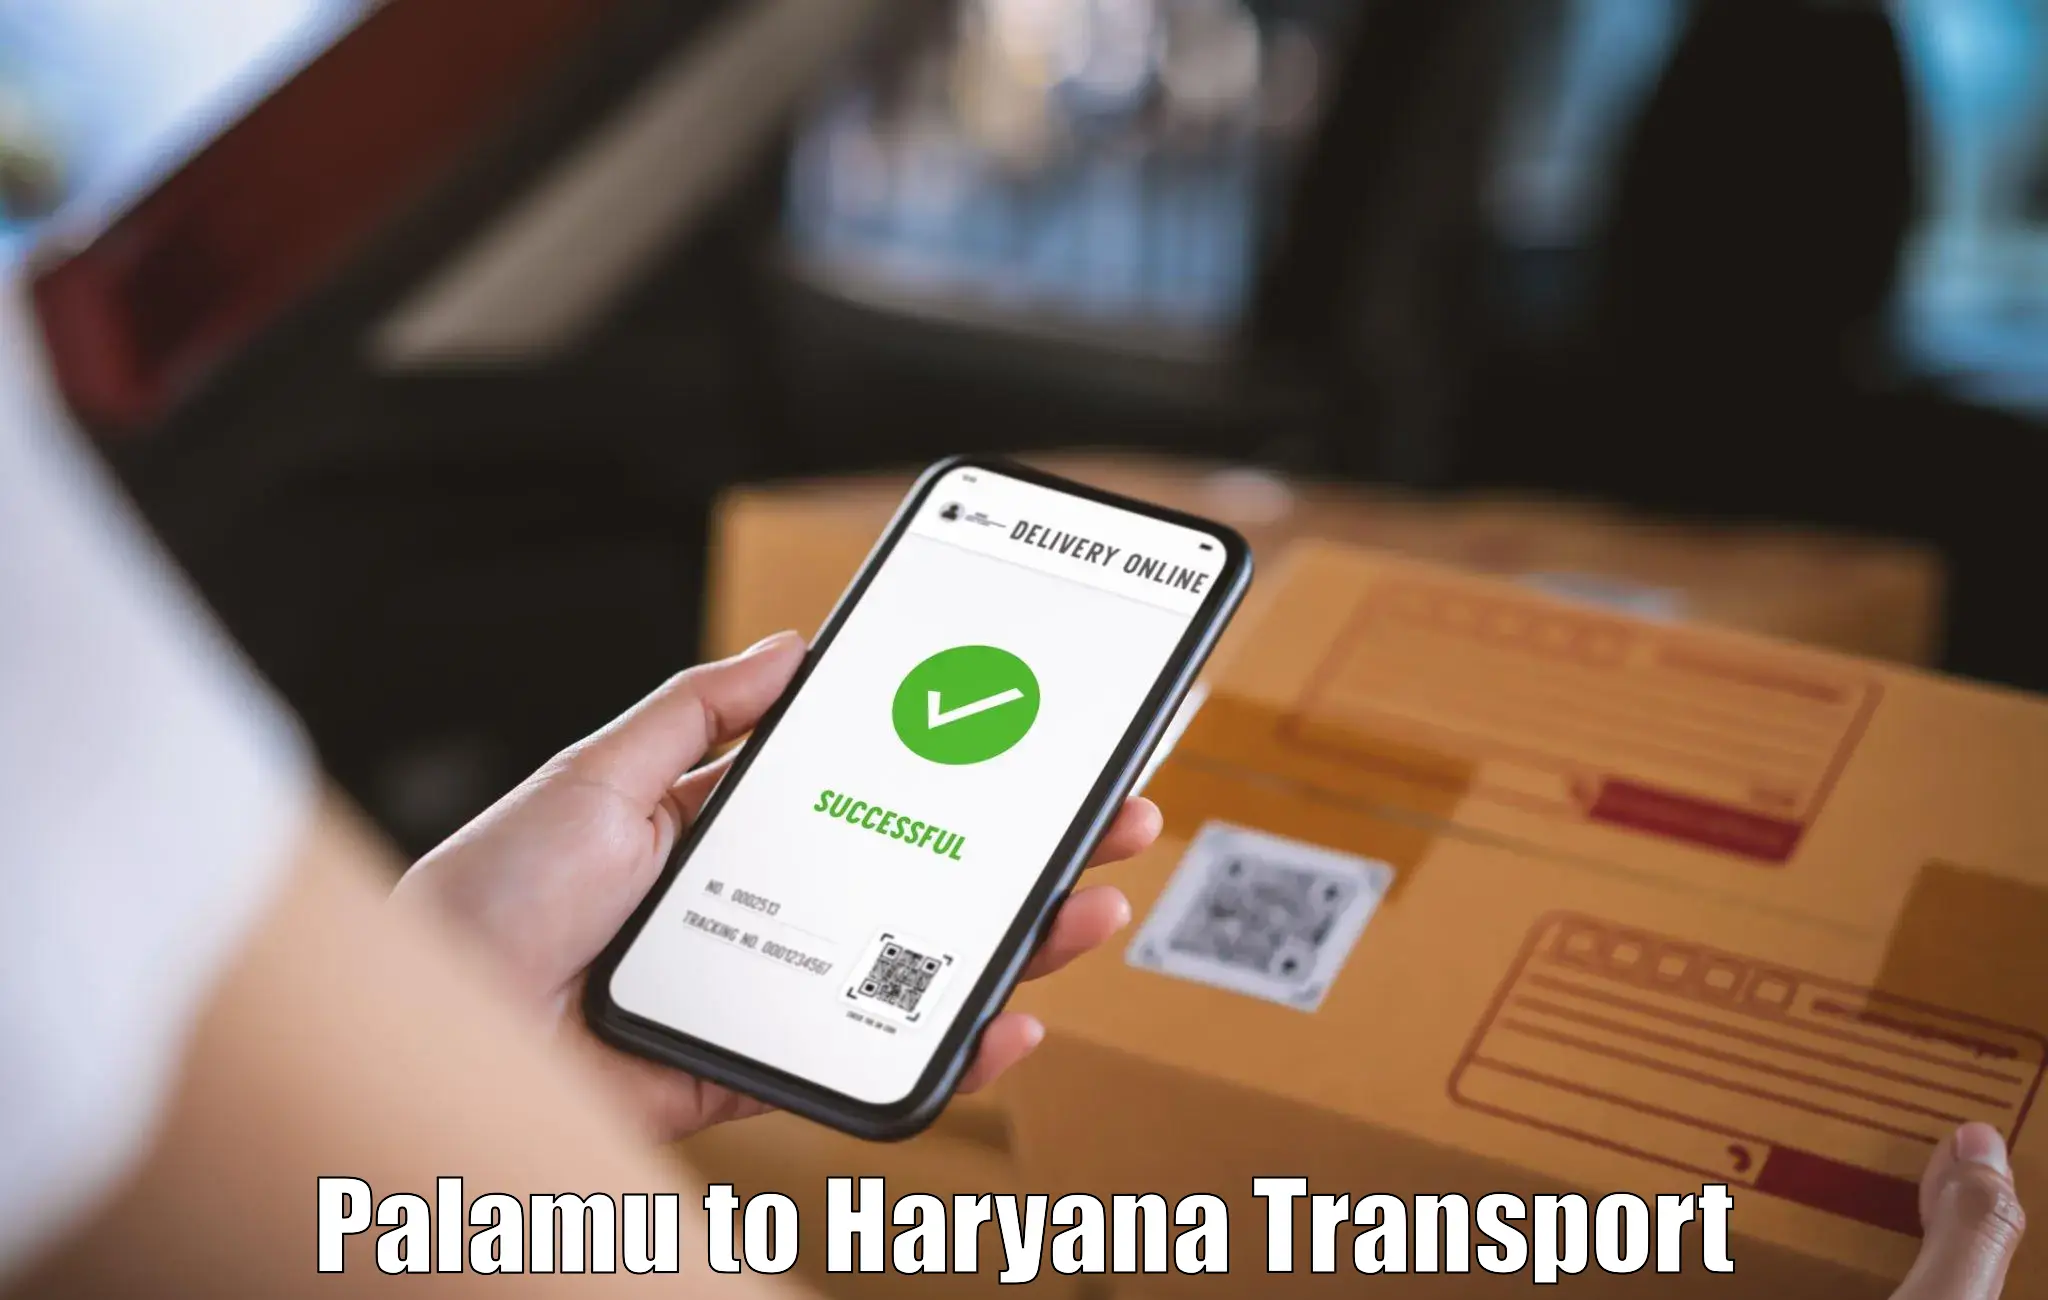 Pick up transport service Palamu to Chaudhary Charan Singh Haryana Agricultural University Hisar